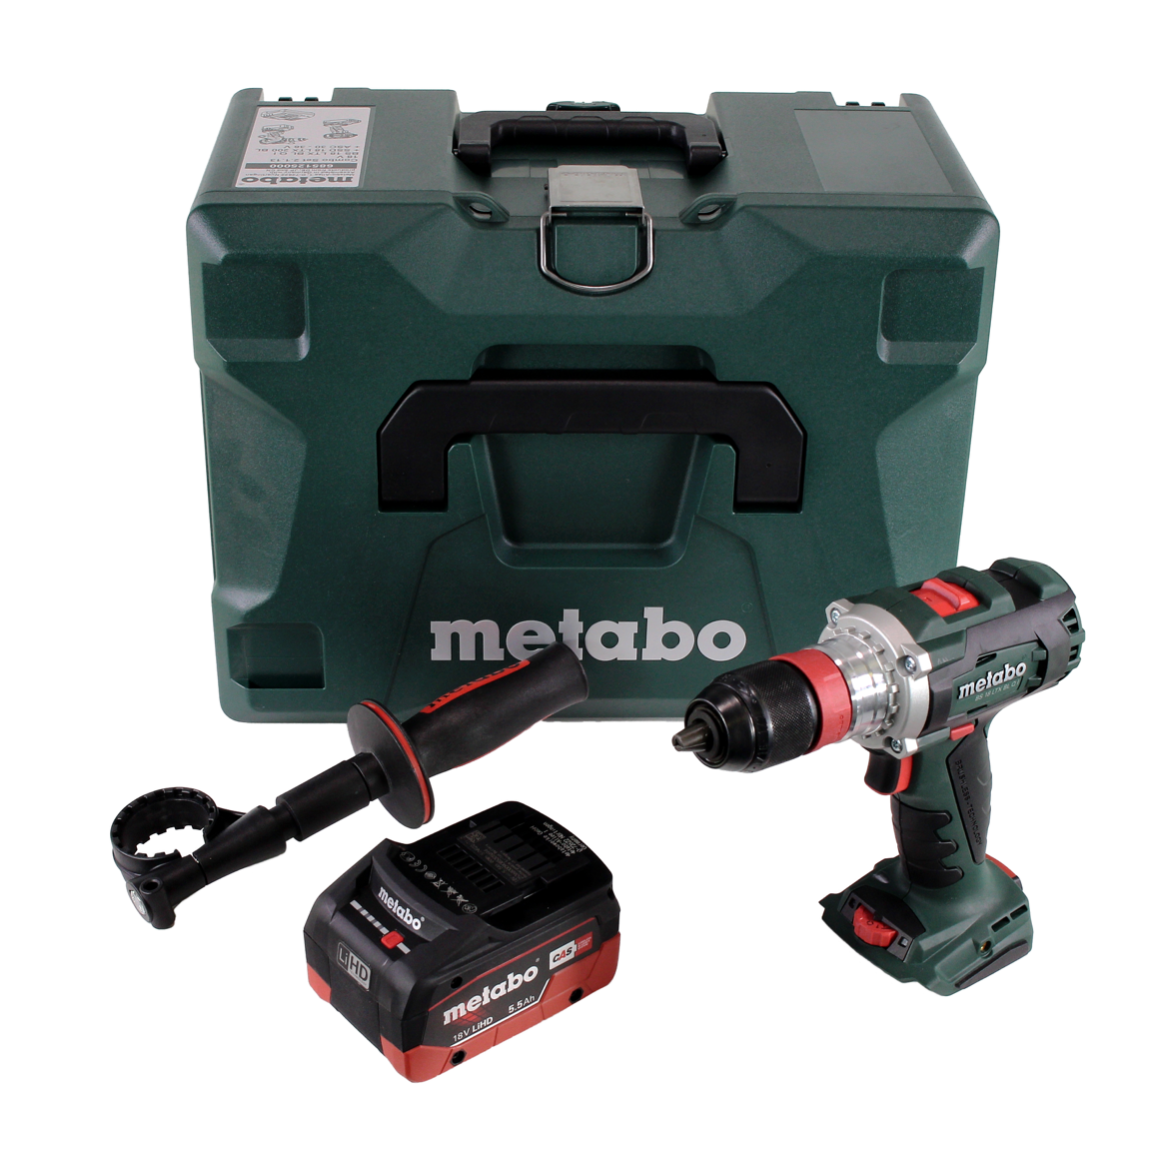 Metabo BS 18 LTX BL Q I Akku Bohrschrauber 18V 120Nm Brushless + 1x Ak –  Toolbrothers